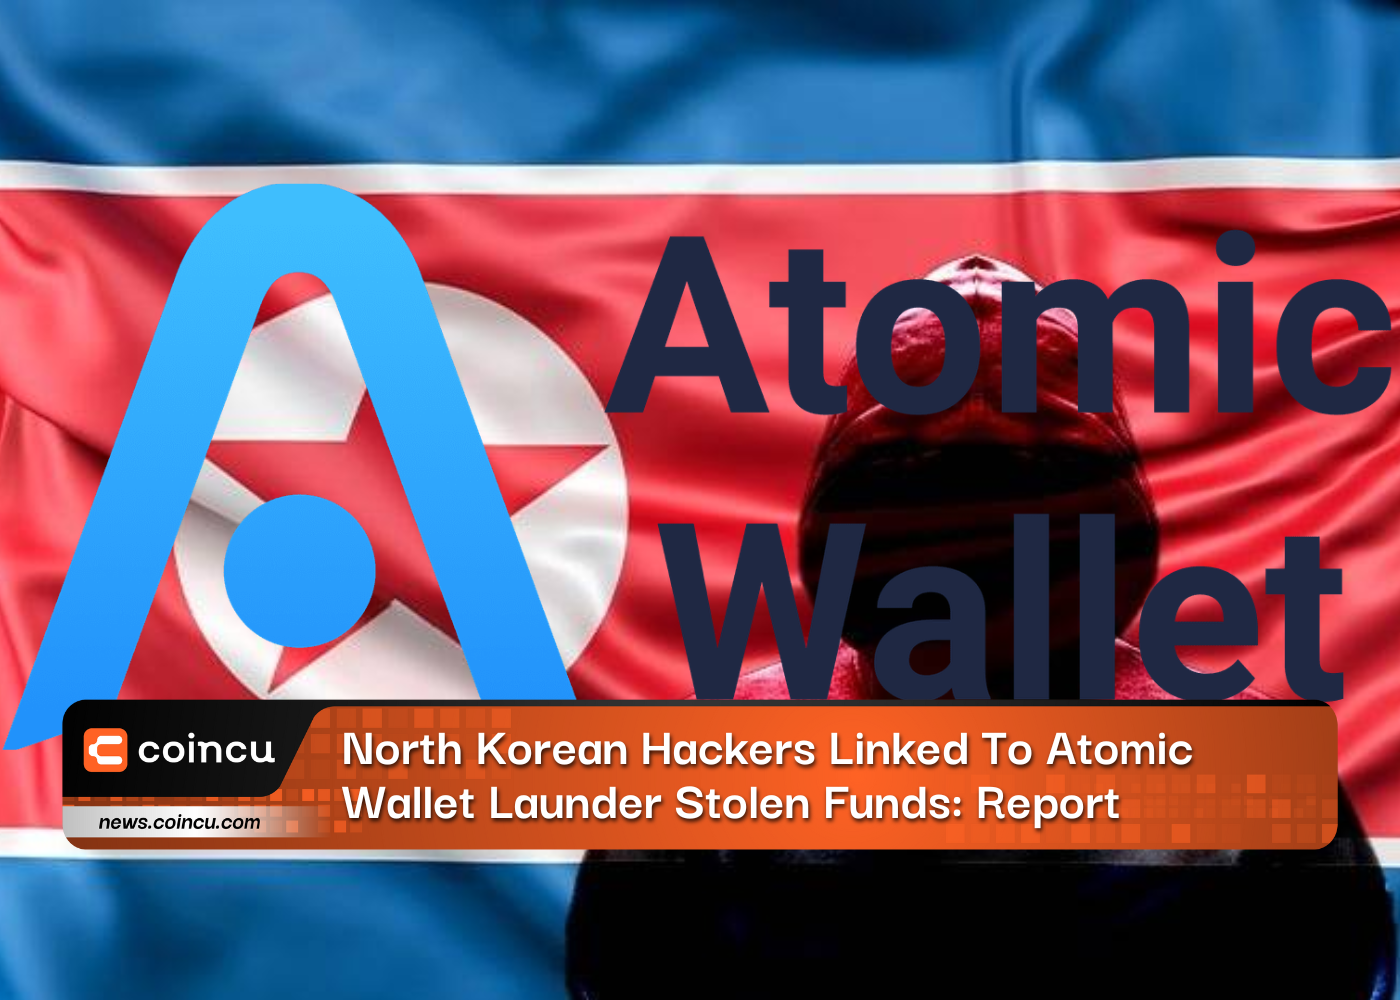 Nordkoreanische Hacker im Zusammenhang mit Atomic Wallet Launder gestohlenen Geldern: Bericht